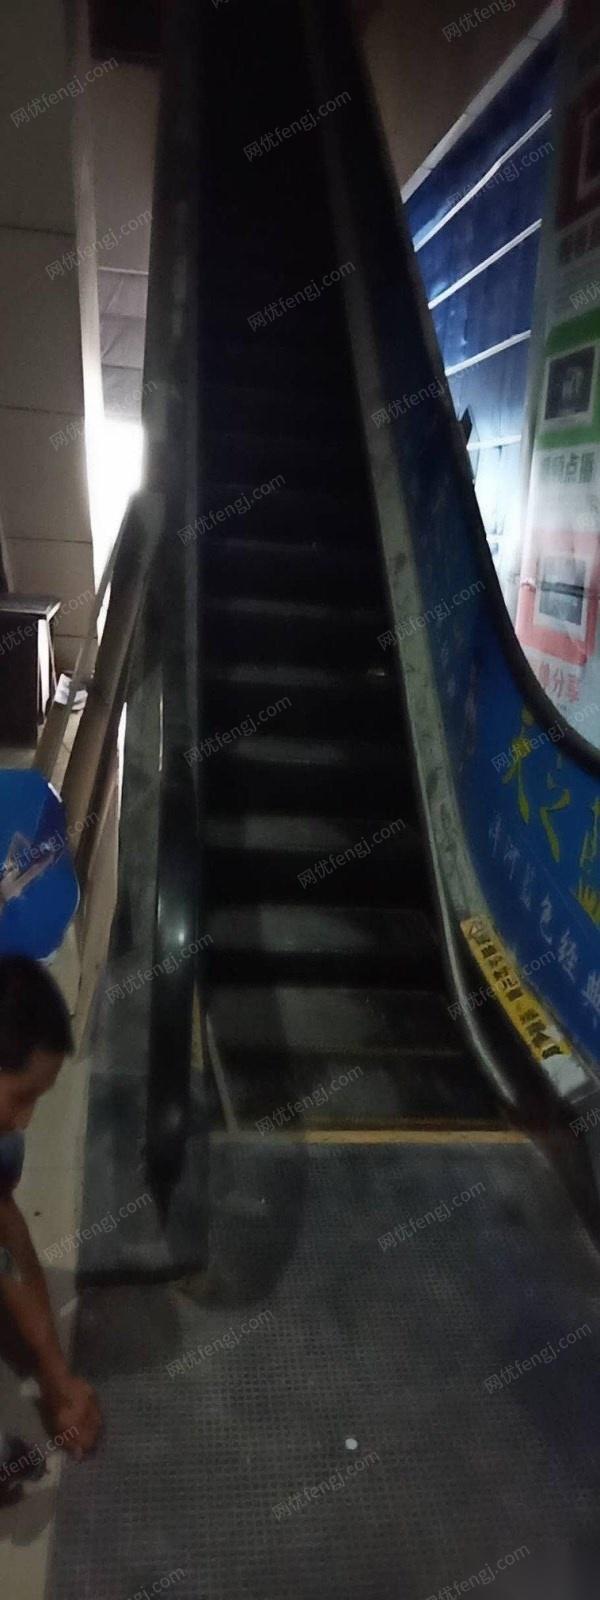 湖南长沙因更改经营项目在位出售商场商用12.5米扶手梯一部